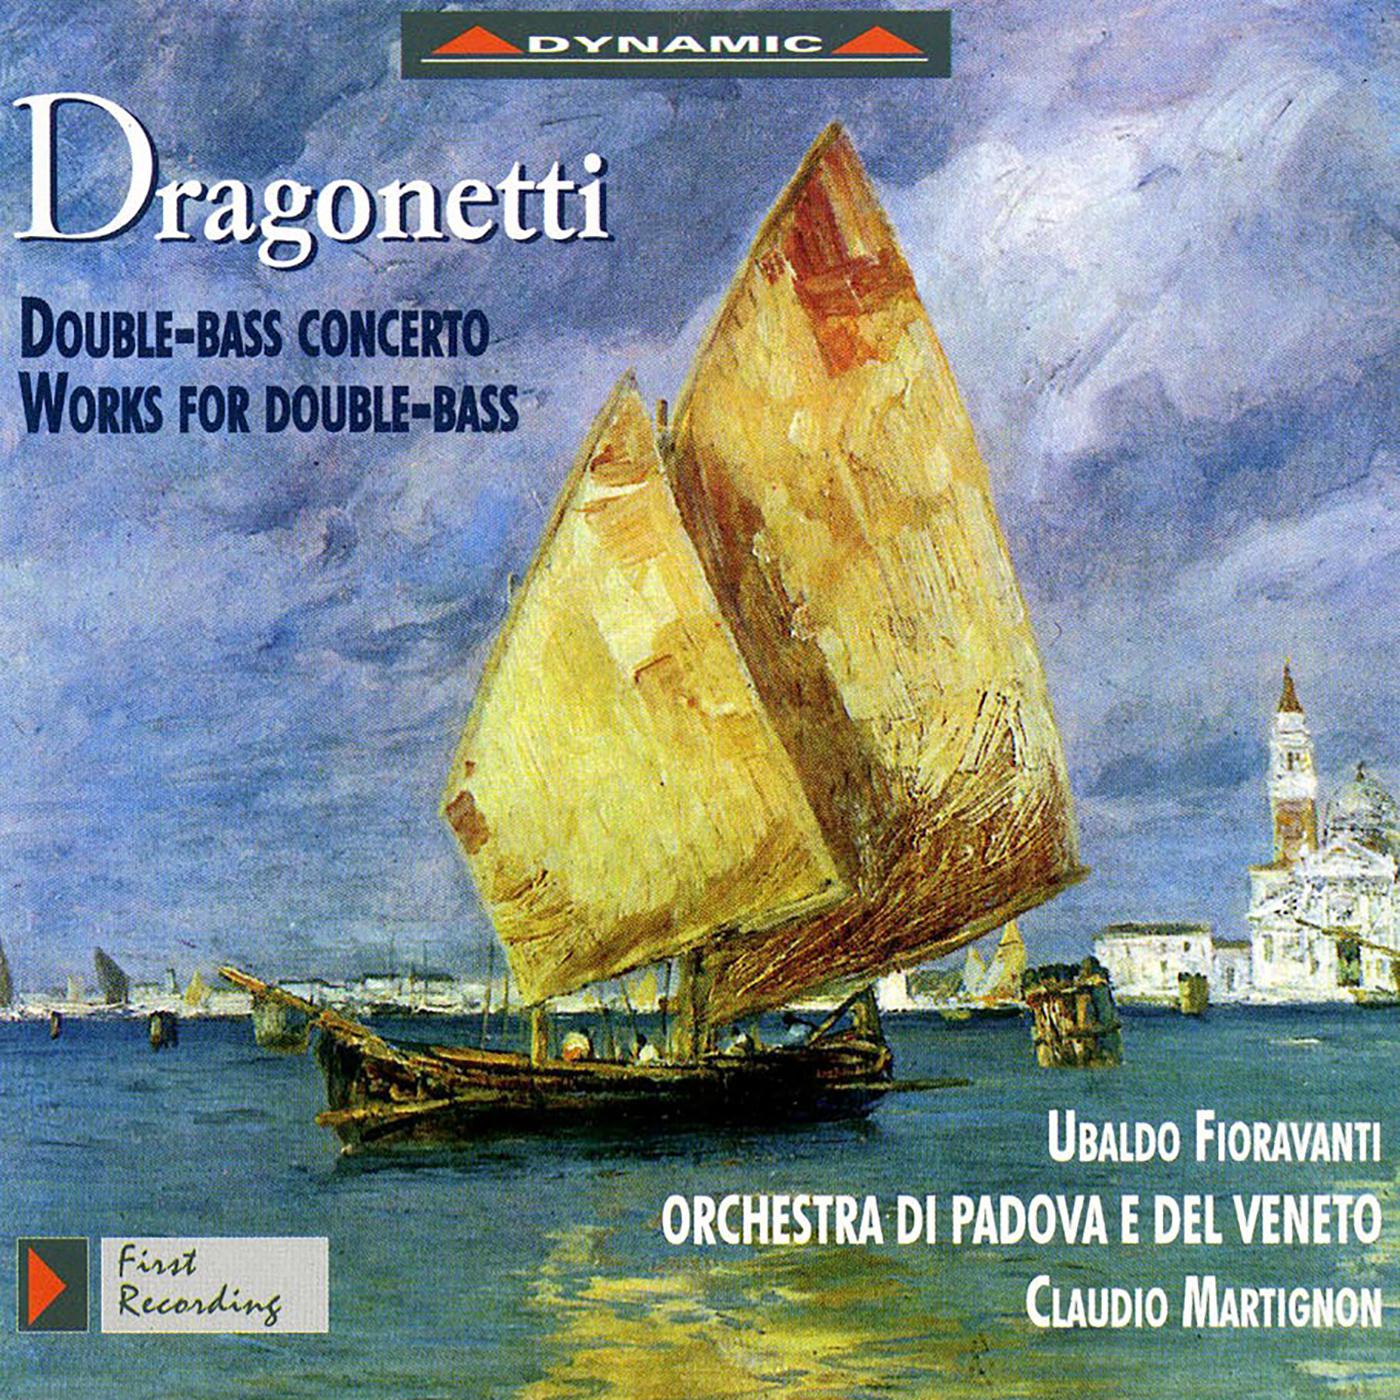 Ubaldo Fioravanti - String Quintet in G Major, D. 180:I. Adagio